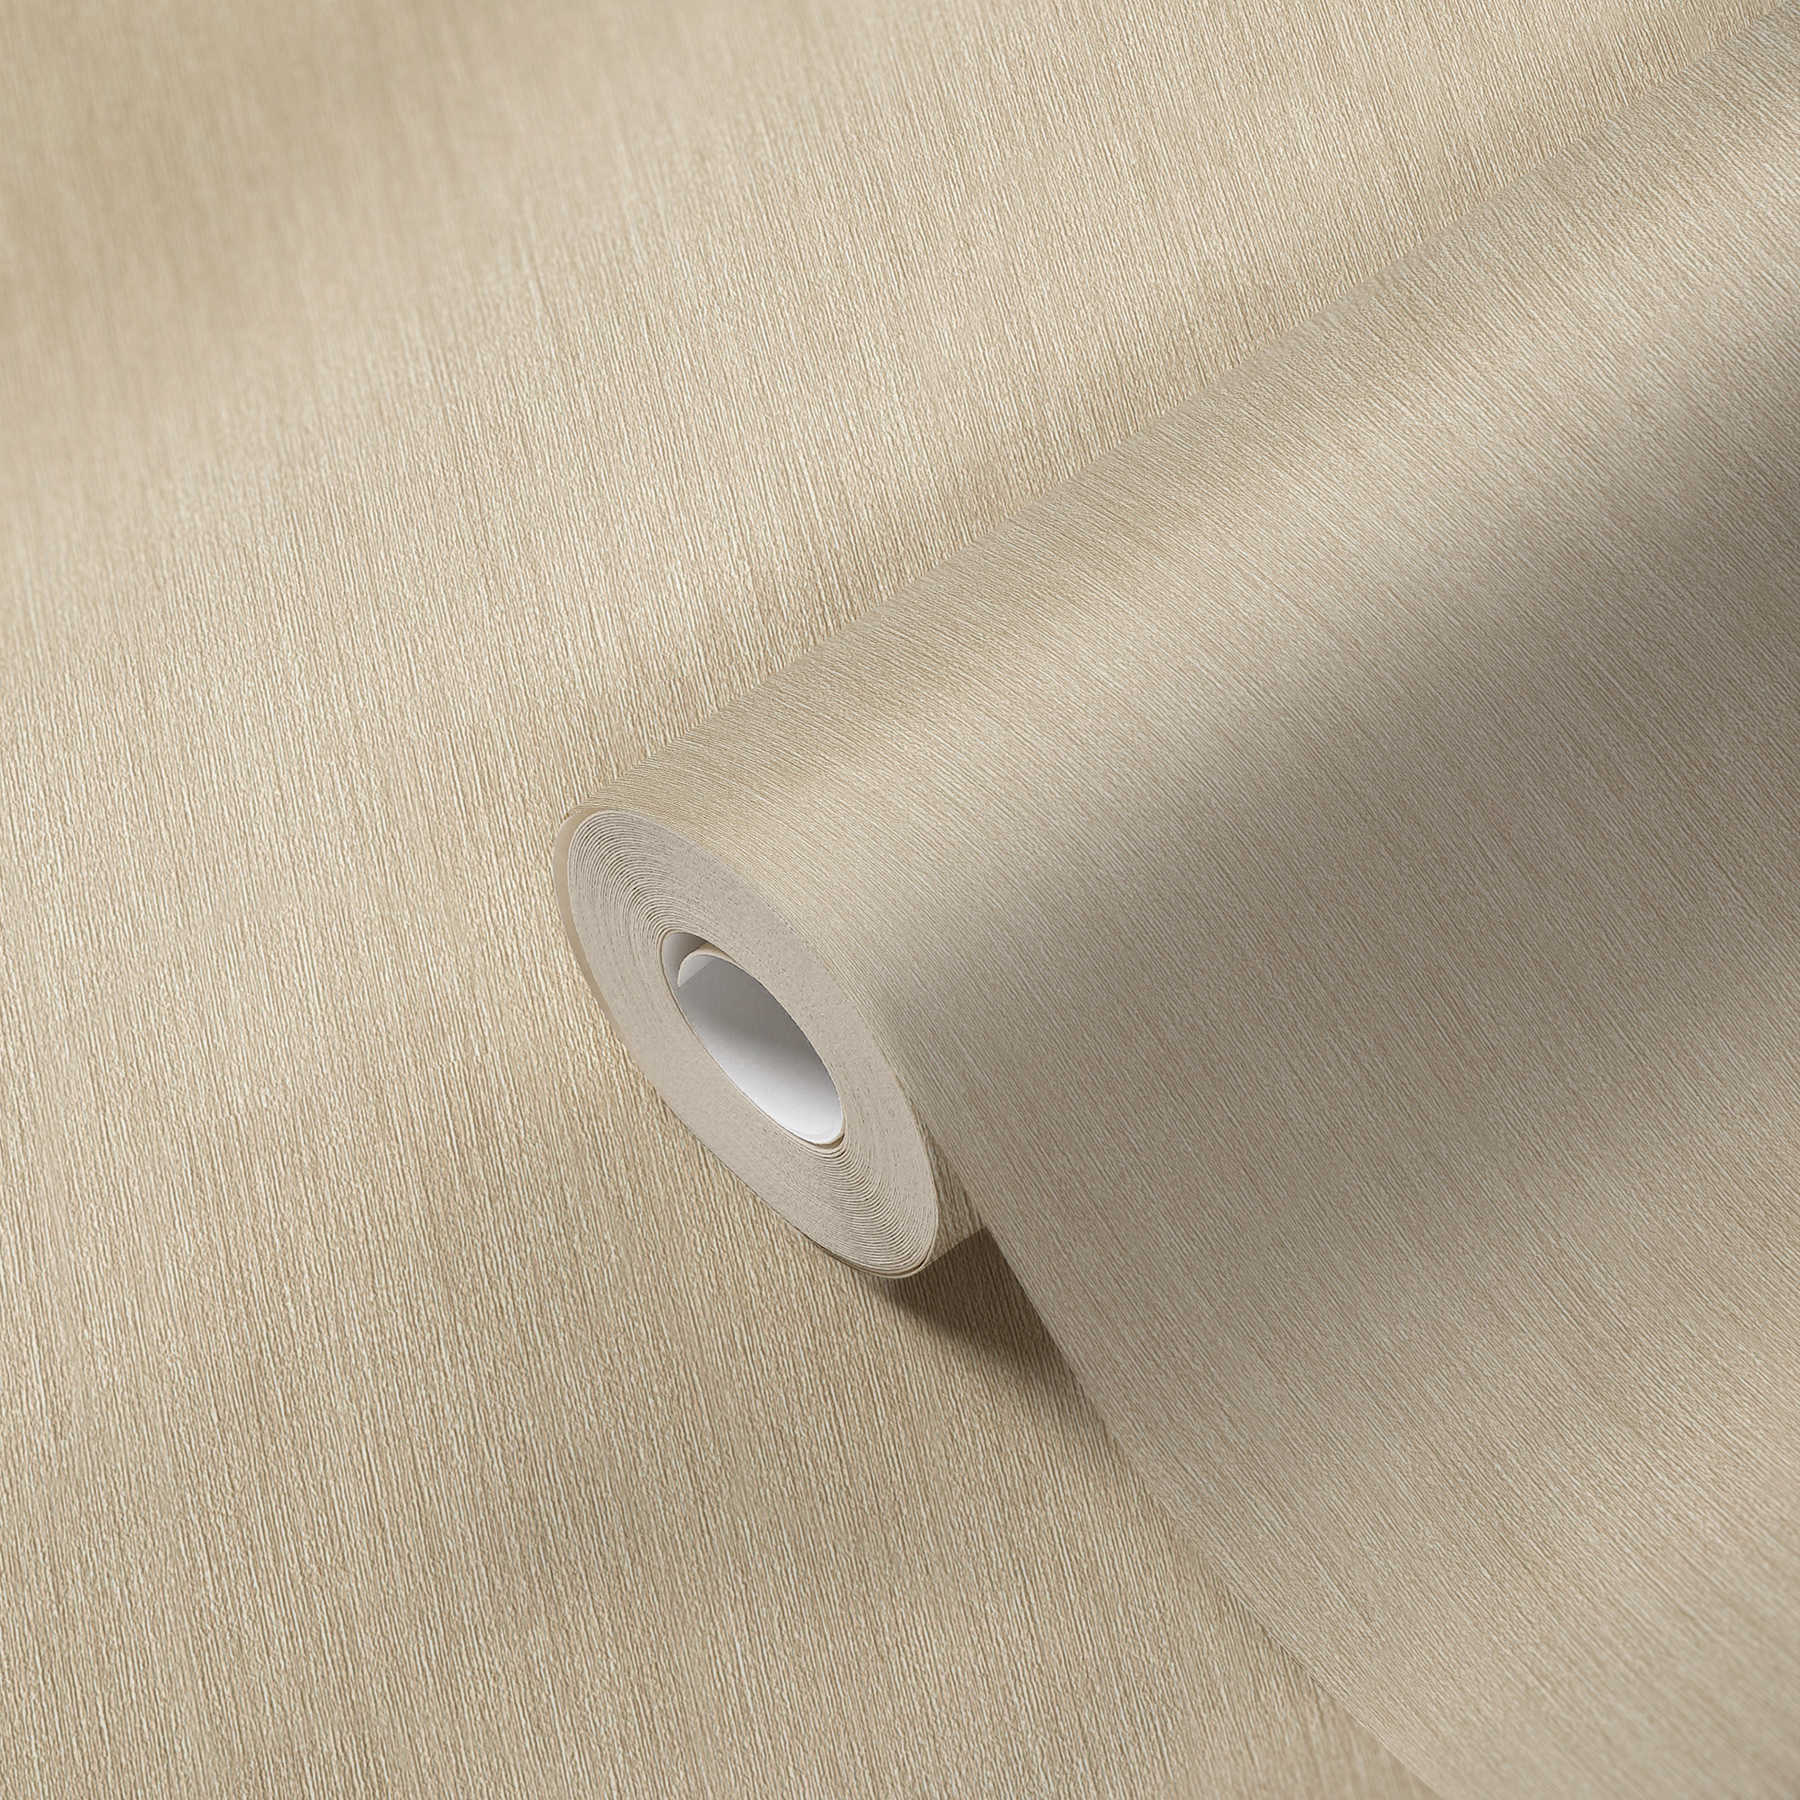             Premium behang gevlekt met textielstructuur beige - beige
        